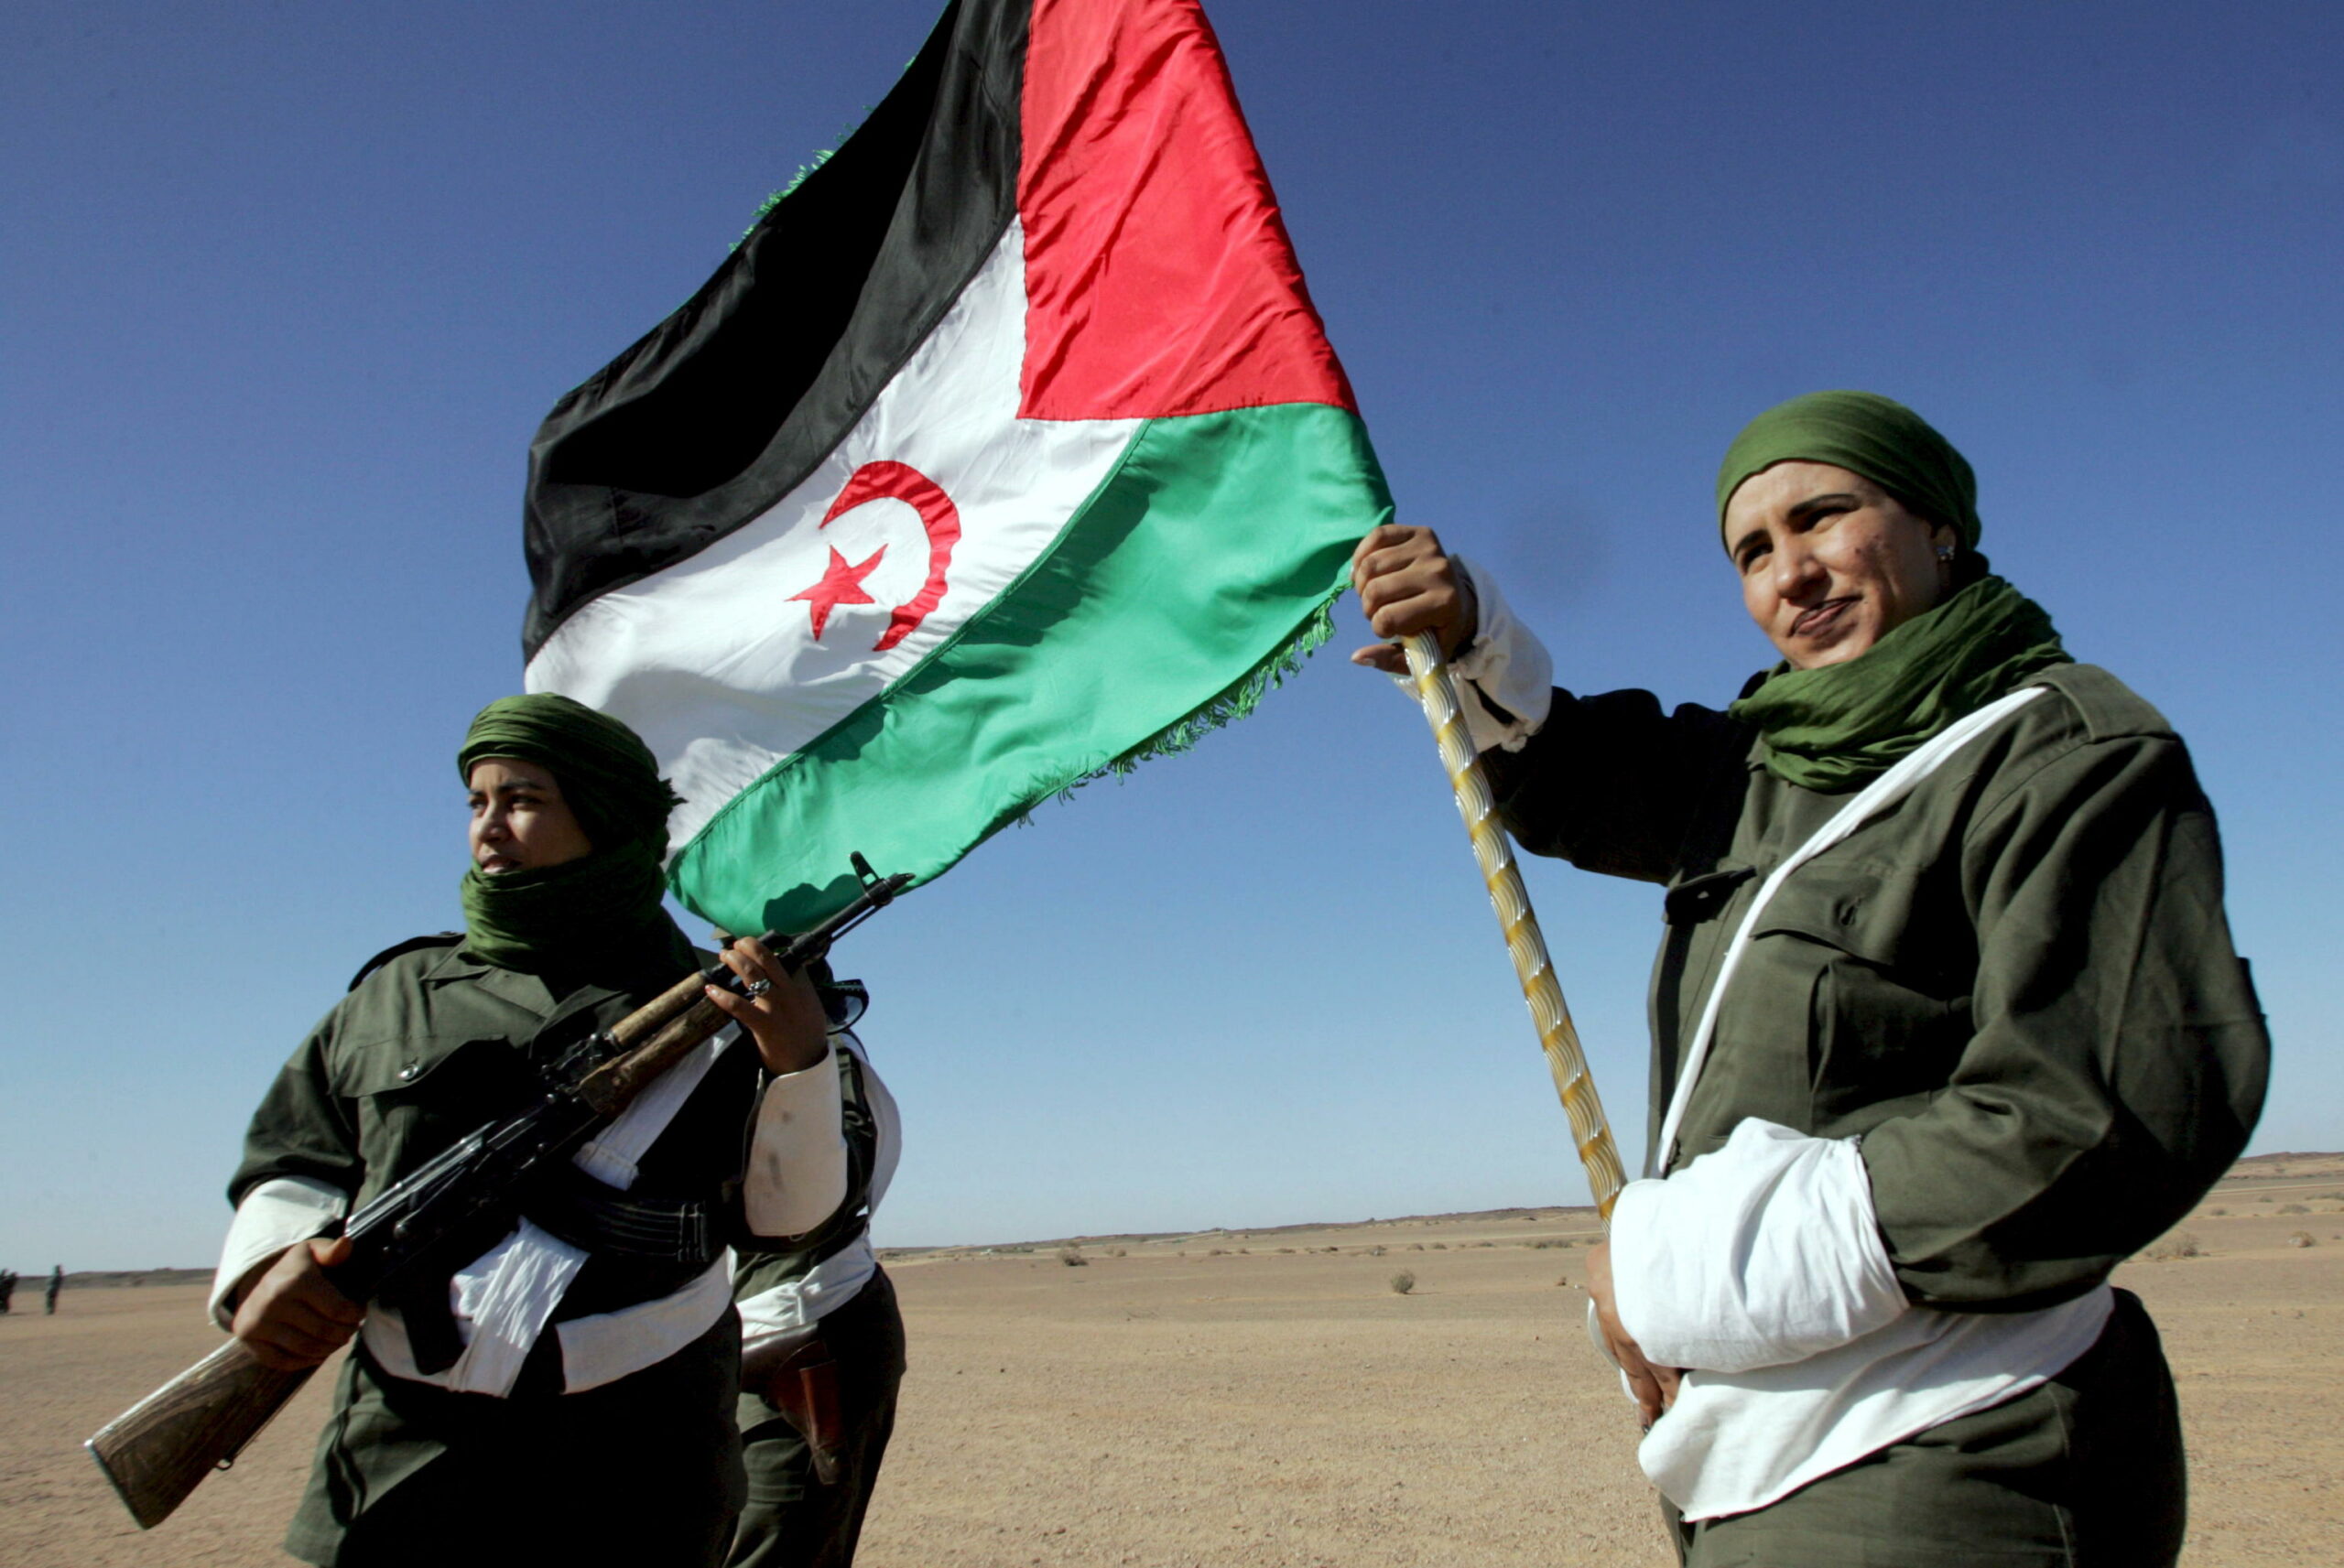 marocco-e-algeria:-la-lotta-fratricida-che-puo-incendiare-il-maghreb